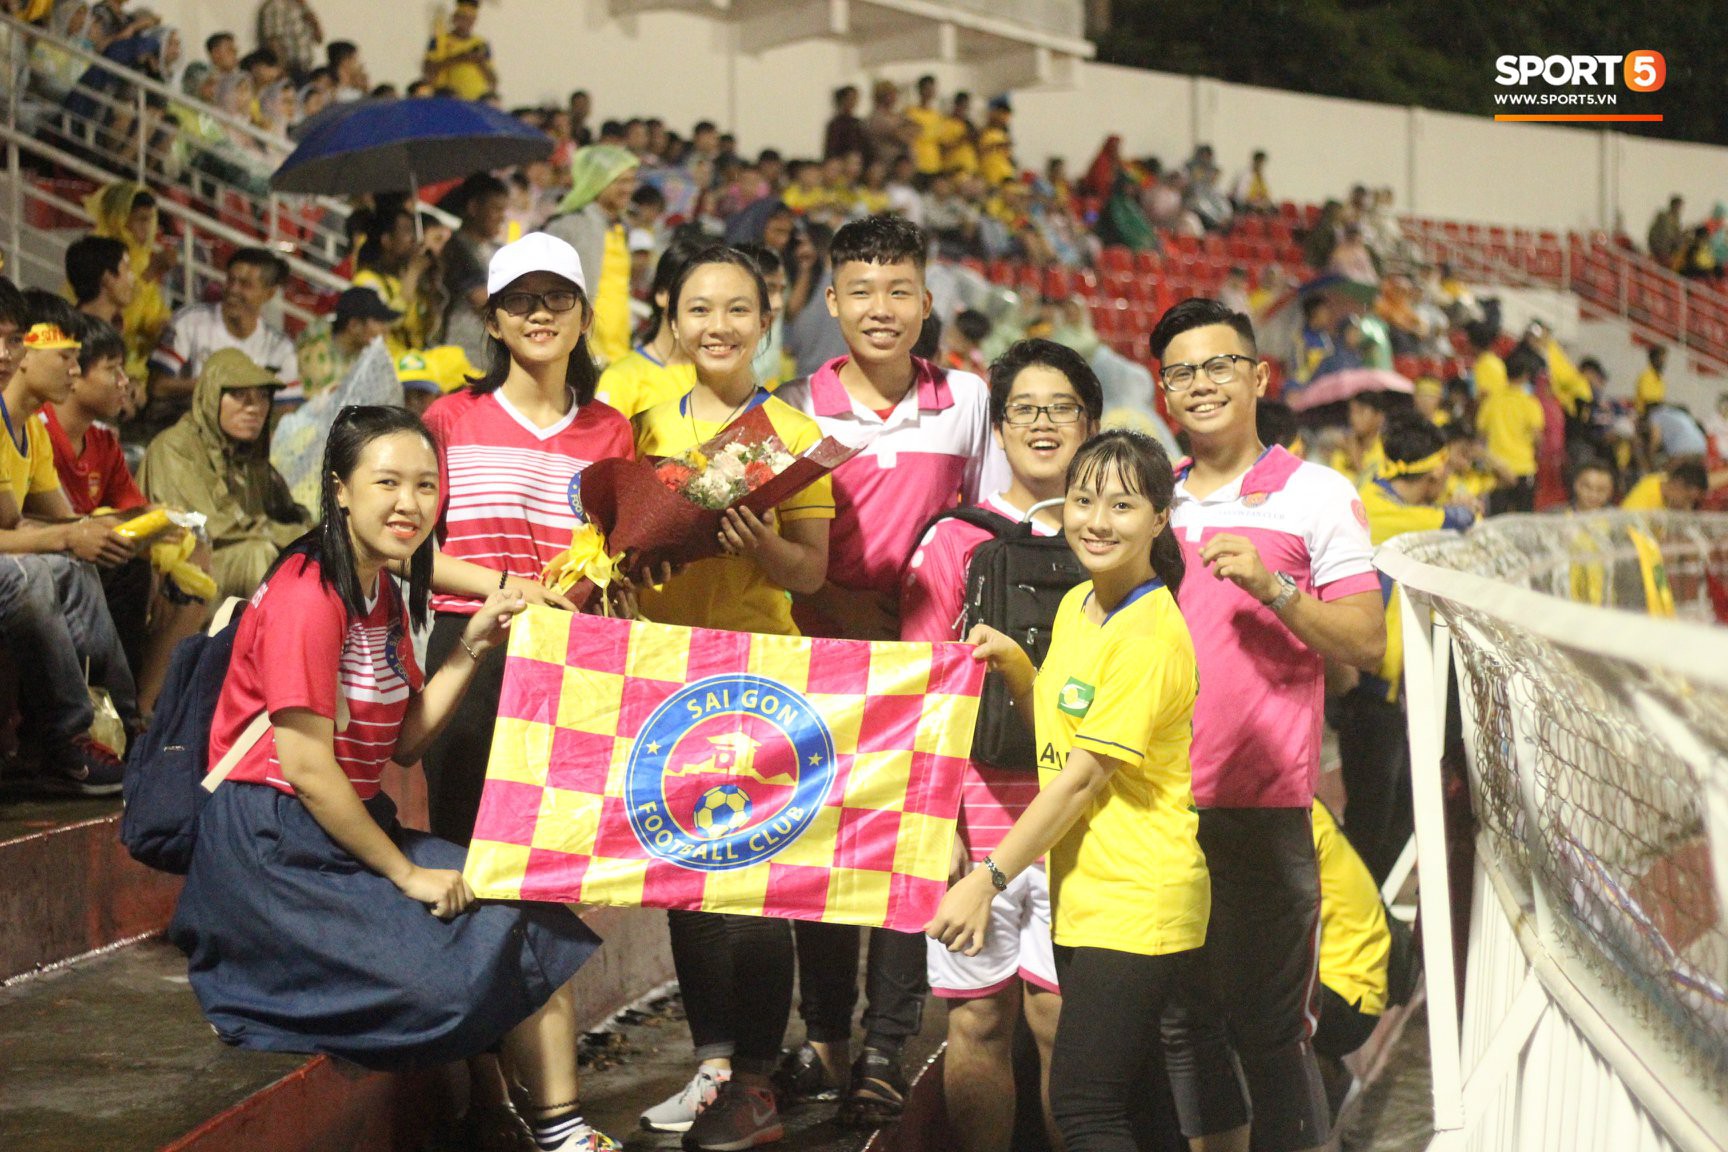 Tranh cãi việc Sài Gòn FC nhường khán đài đội nhà cho CĐV Thanh Hóa - Ảnh 3.